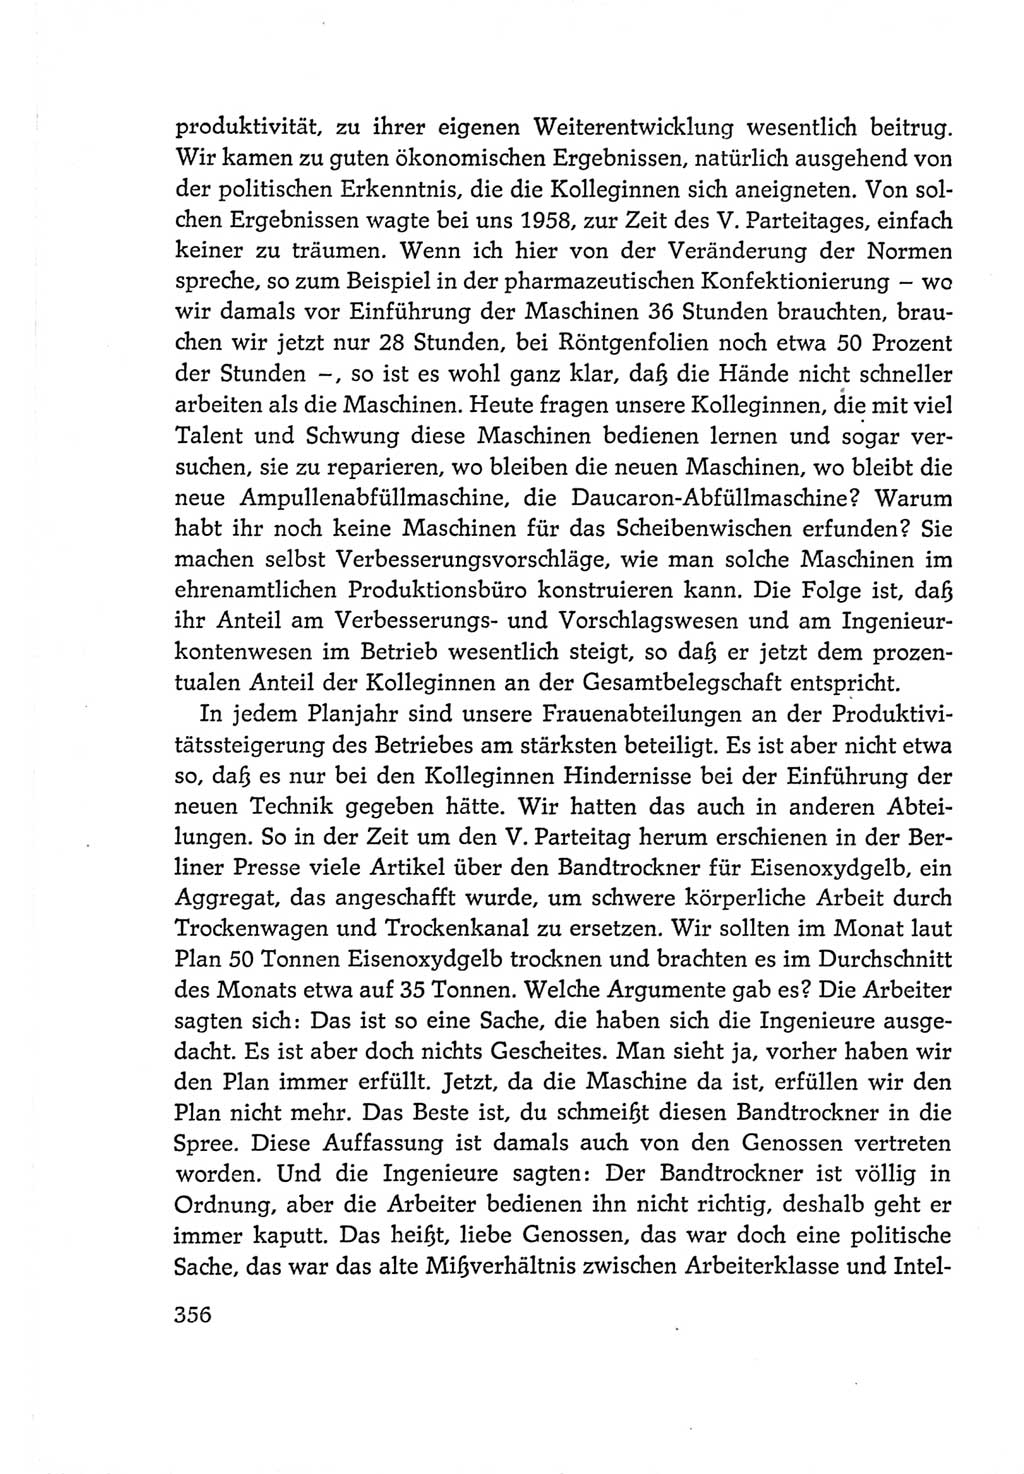 Protokoll der Verhandlungen des Ⅵ. Parteitages der Sozialistischen Einheitspartei Deutschlands (SED) [Deutsche Demokratische Republik (DDR)] 1963, Band Ⅰ, Seite 356 (Prot. Verh. Ⅵ. PT SED DDR 1963, Bd. Ⅰ, S. 356)